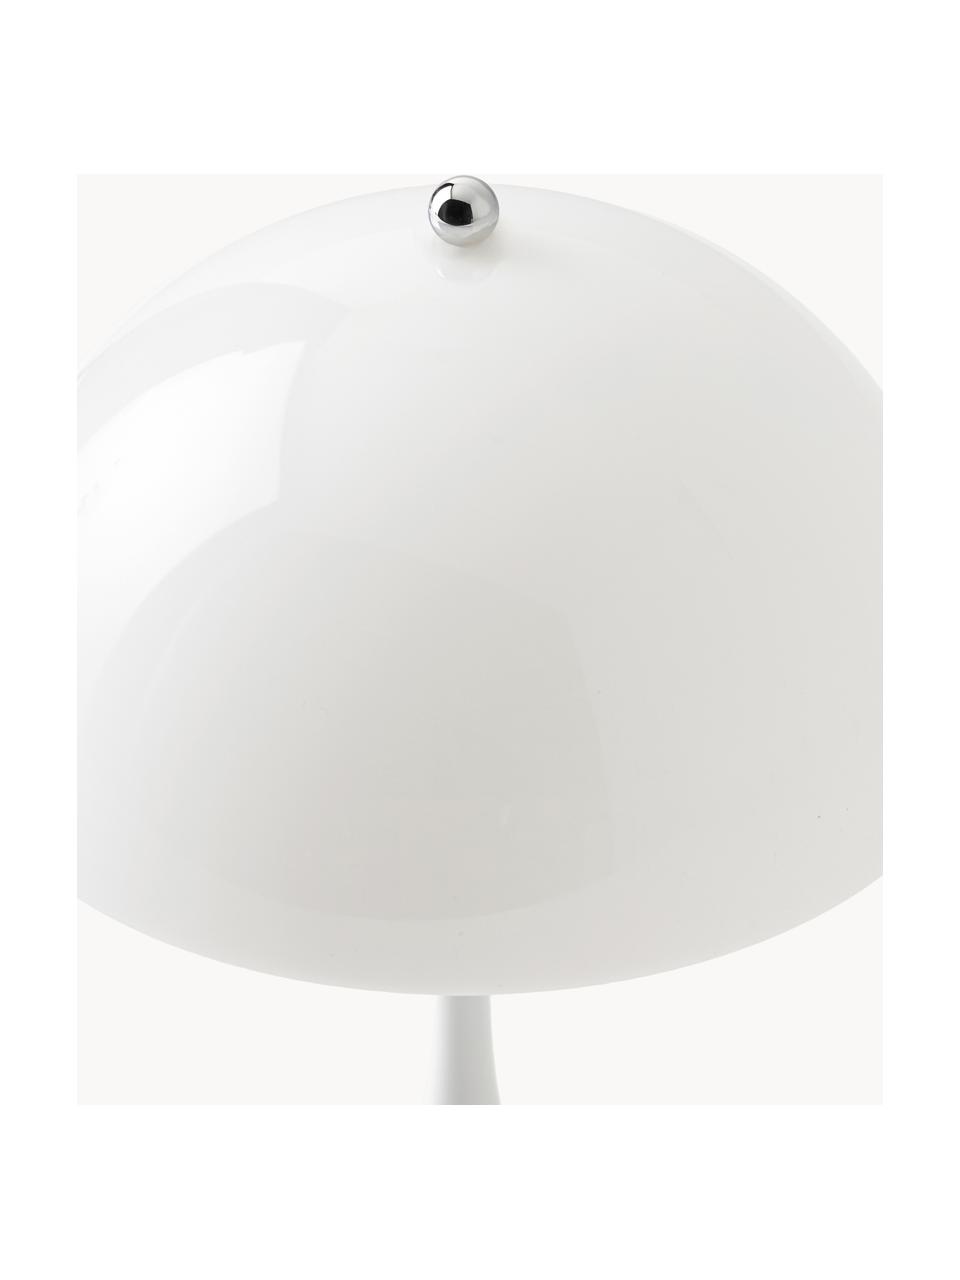 Mobilna lampa stołowa LED z funkcją przyciemniania Panthella, W 24 cm, Stelaż: aluminium powlekane, Białe szkło akrylowe, Ø 16 x W 24 cm